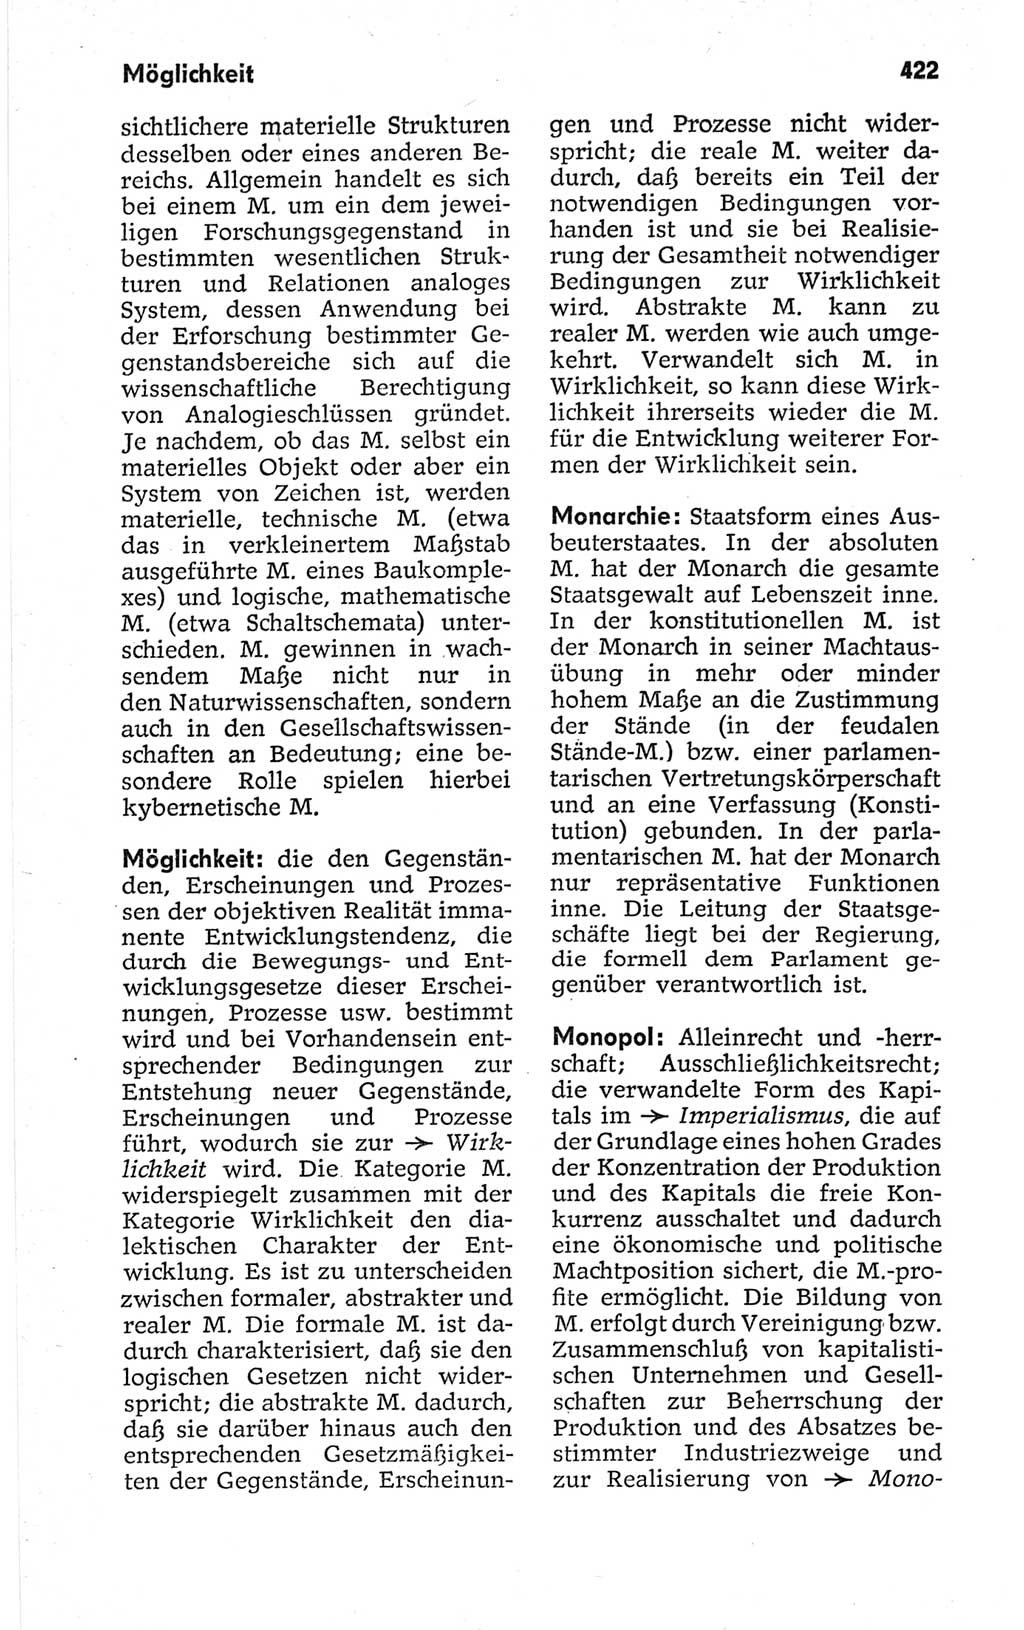 Kleines politisches Wörterbuch [Deutsche Demokratische Republik (DDR)] 1967, Seite 422 (Kl. pol. Wb. DDR 1967, S. 422)